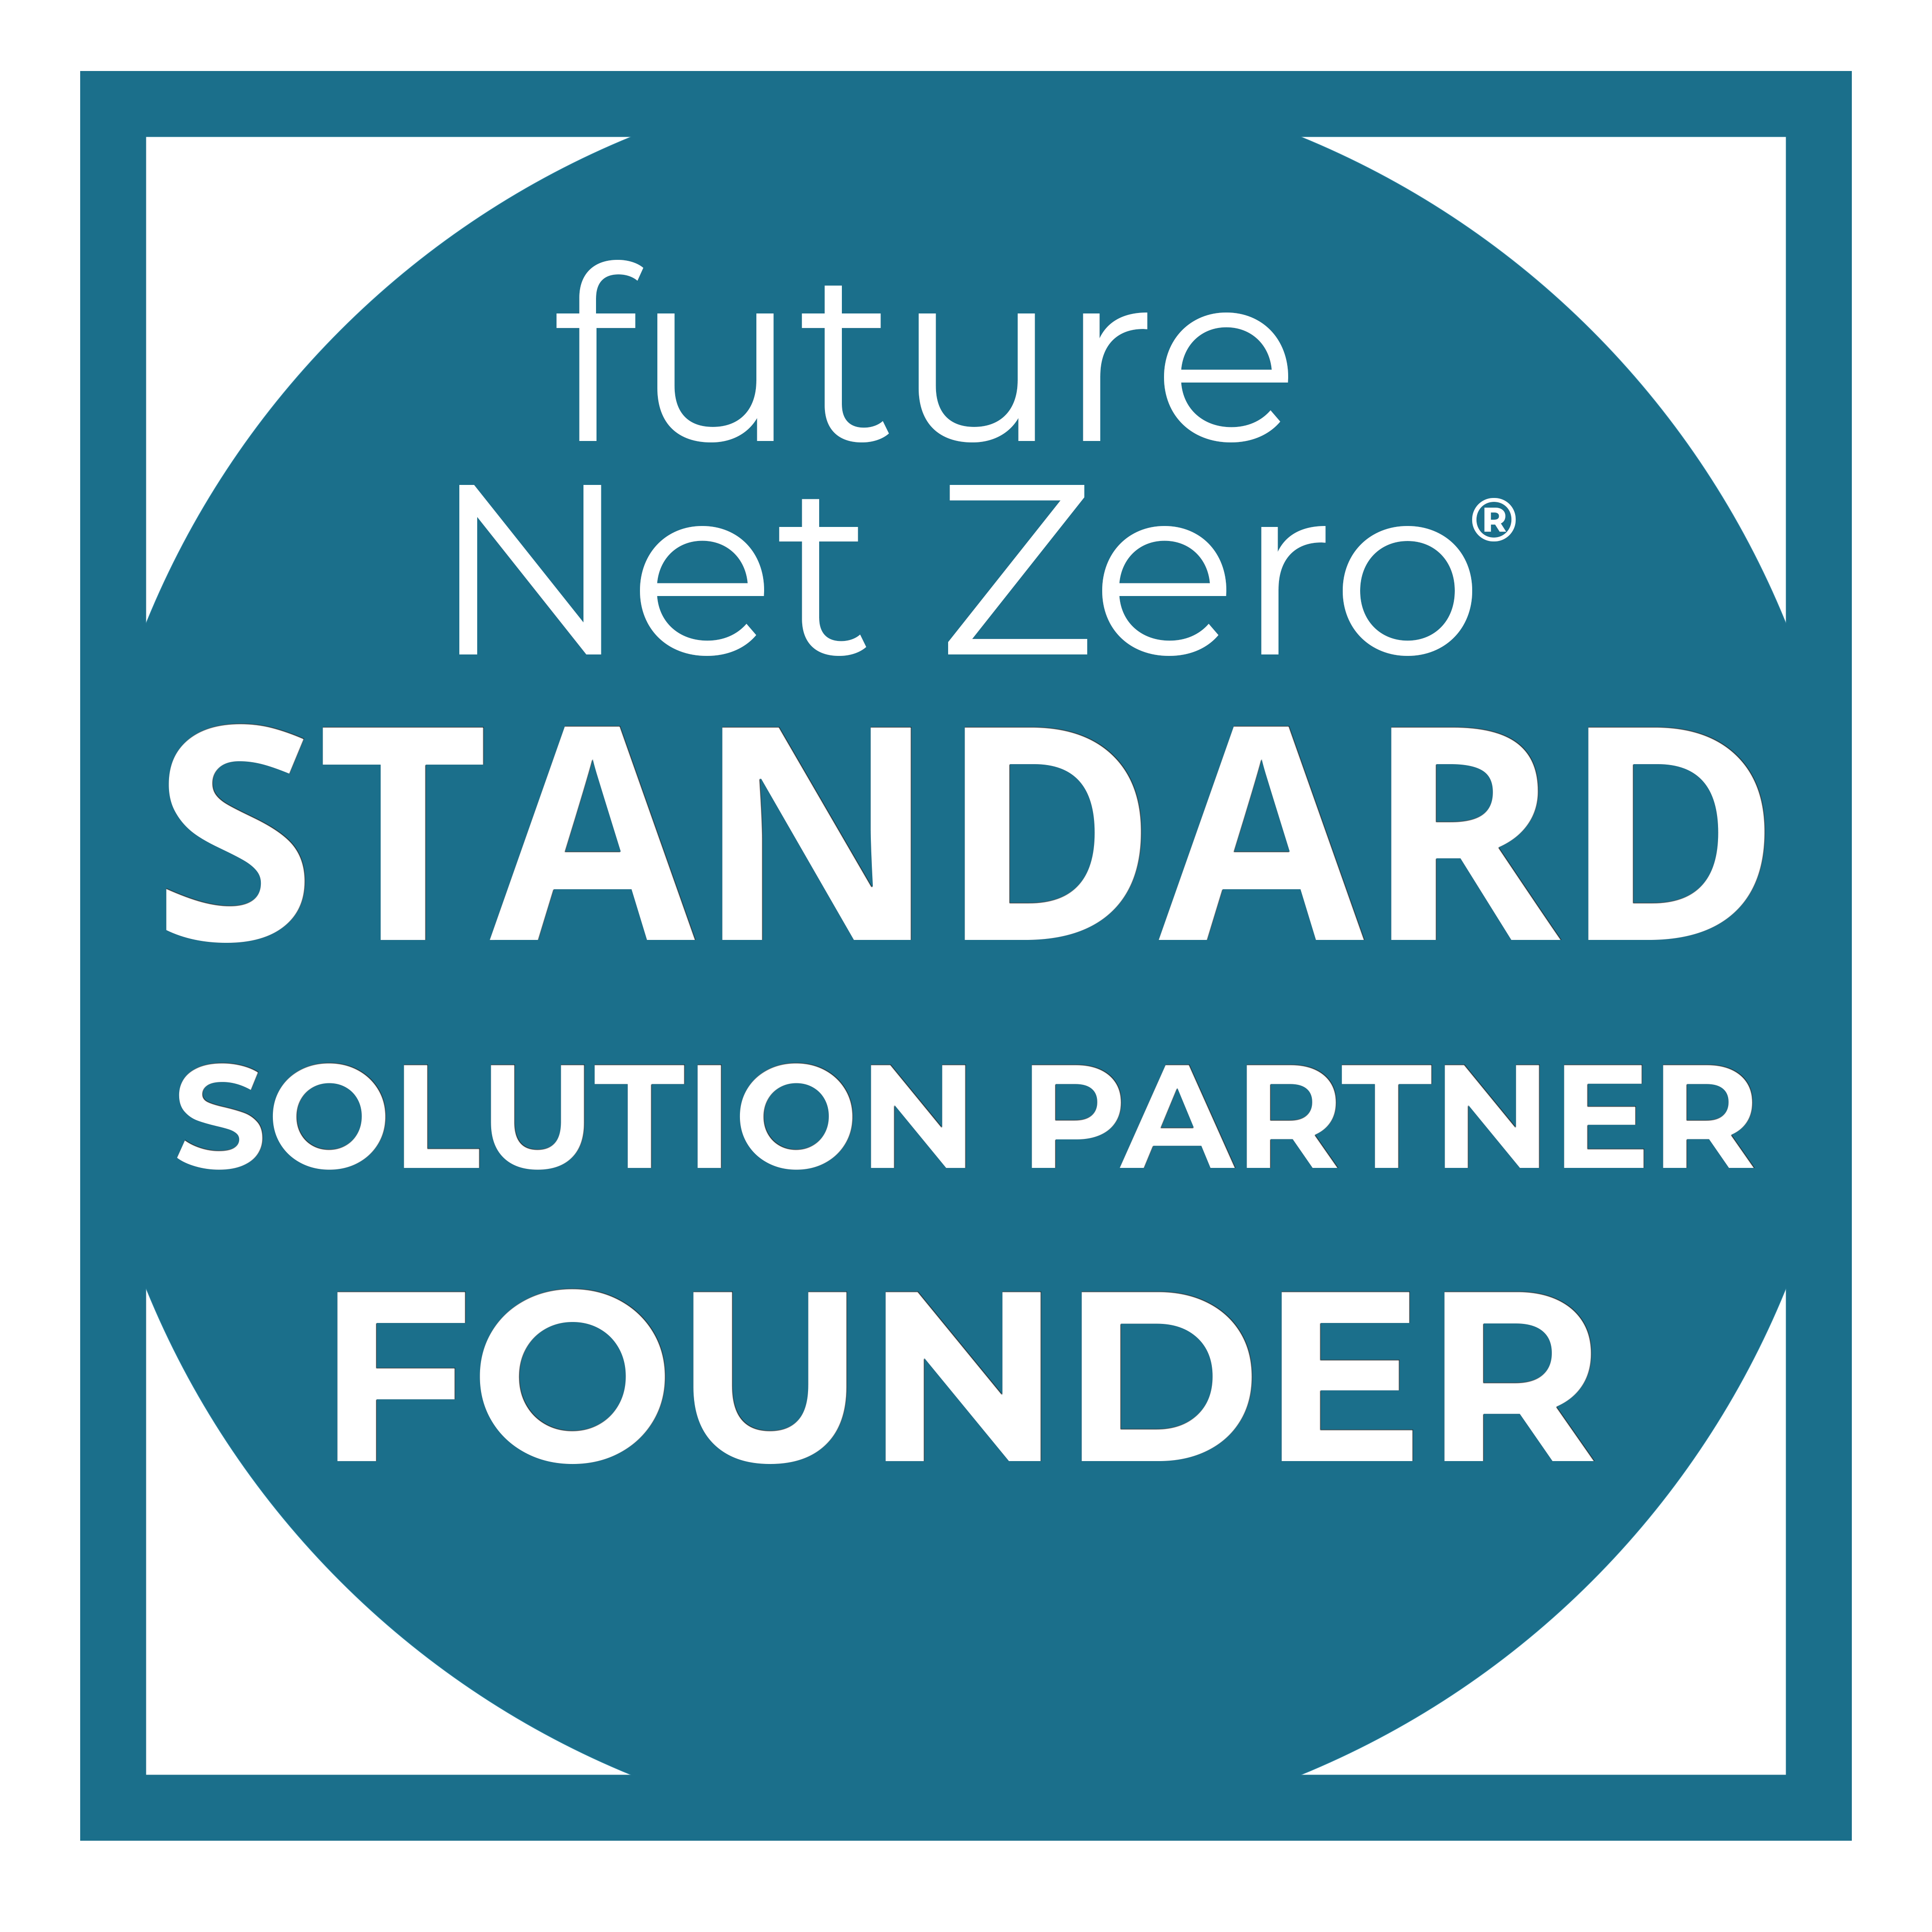 FNZ Standard Badge - Solution Partner Founder